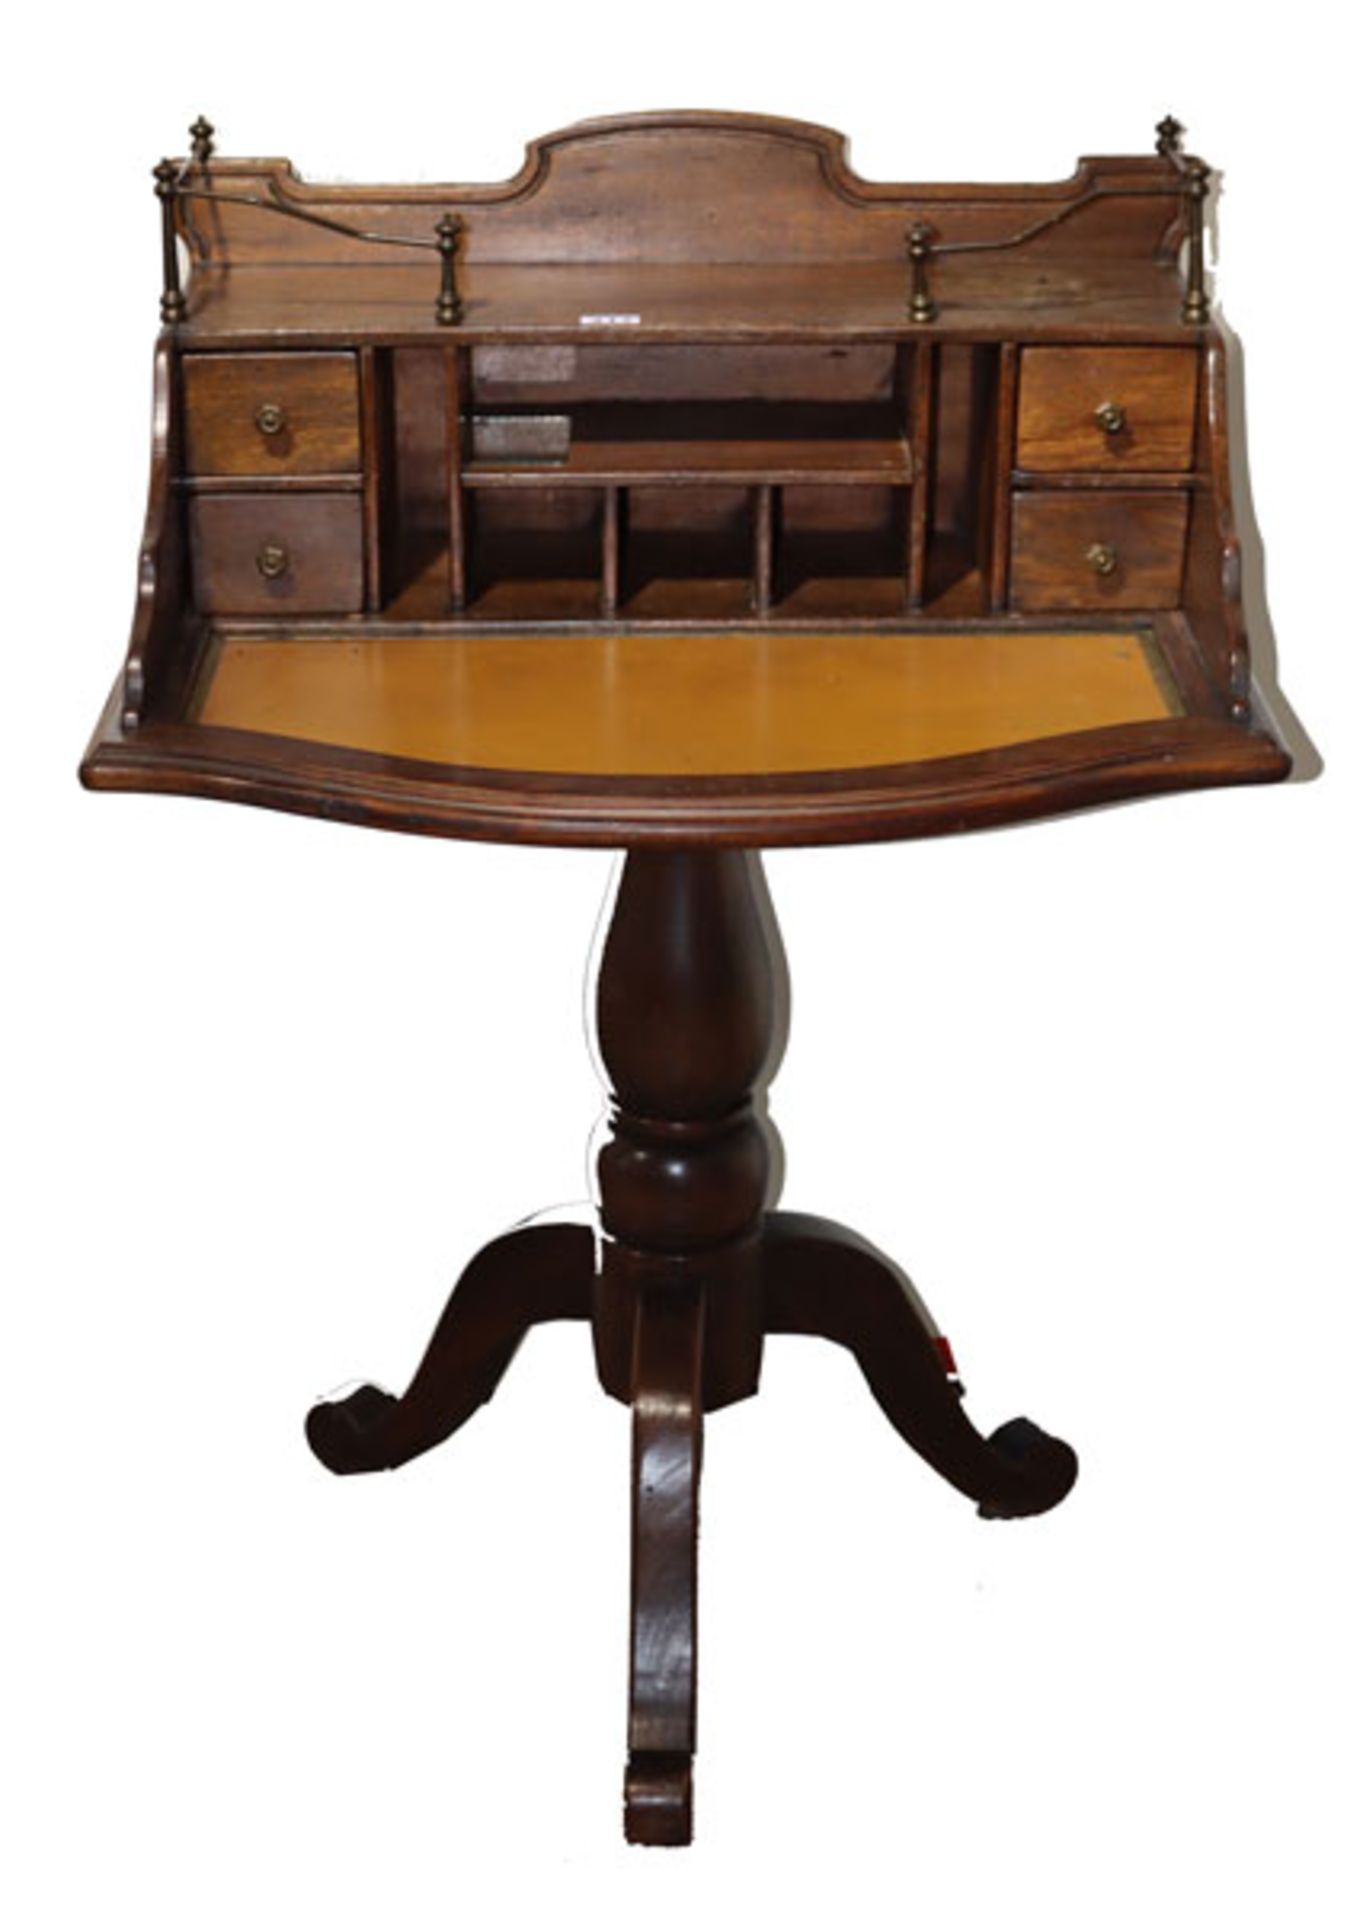 Damen-Schreibtisch auf gedrechseltem Mittelfuß mit 3 Beinen, Korpus mit 4 Schüben und diversen